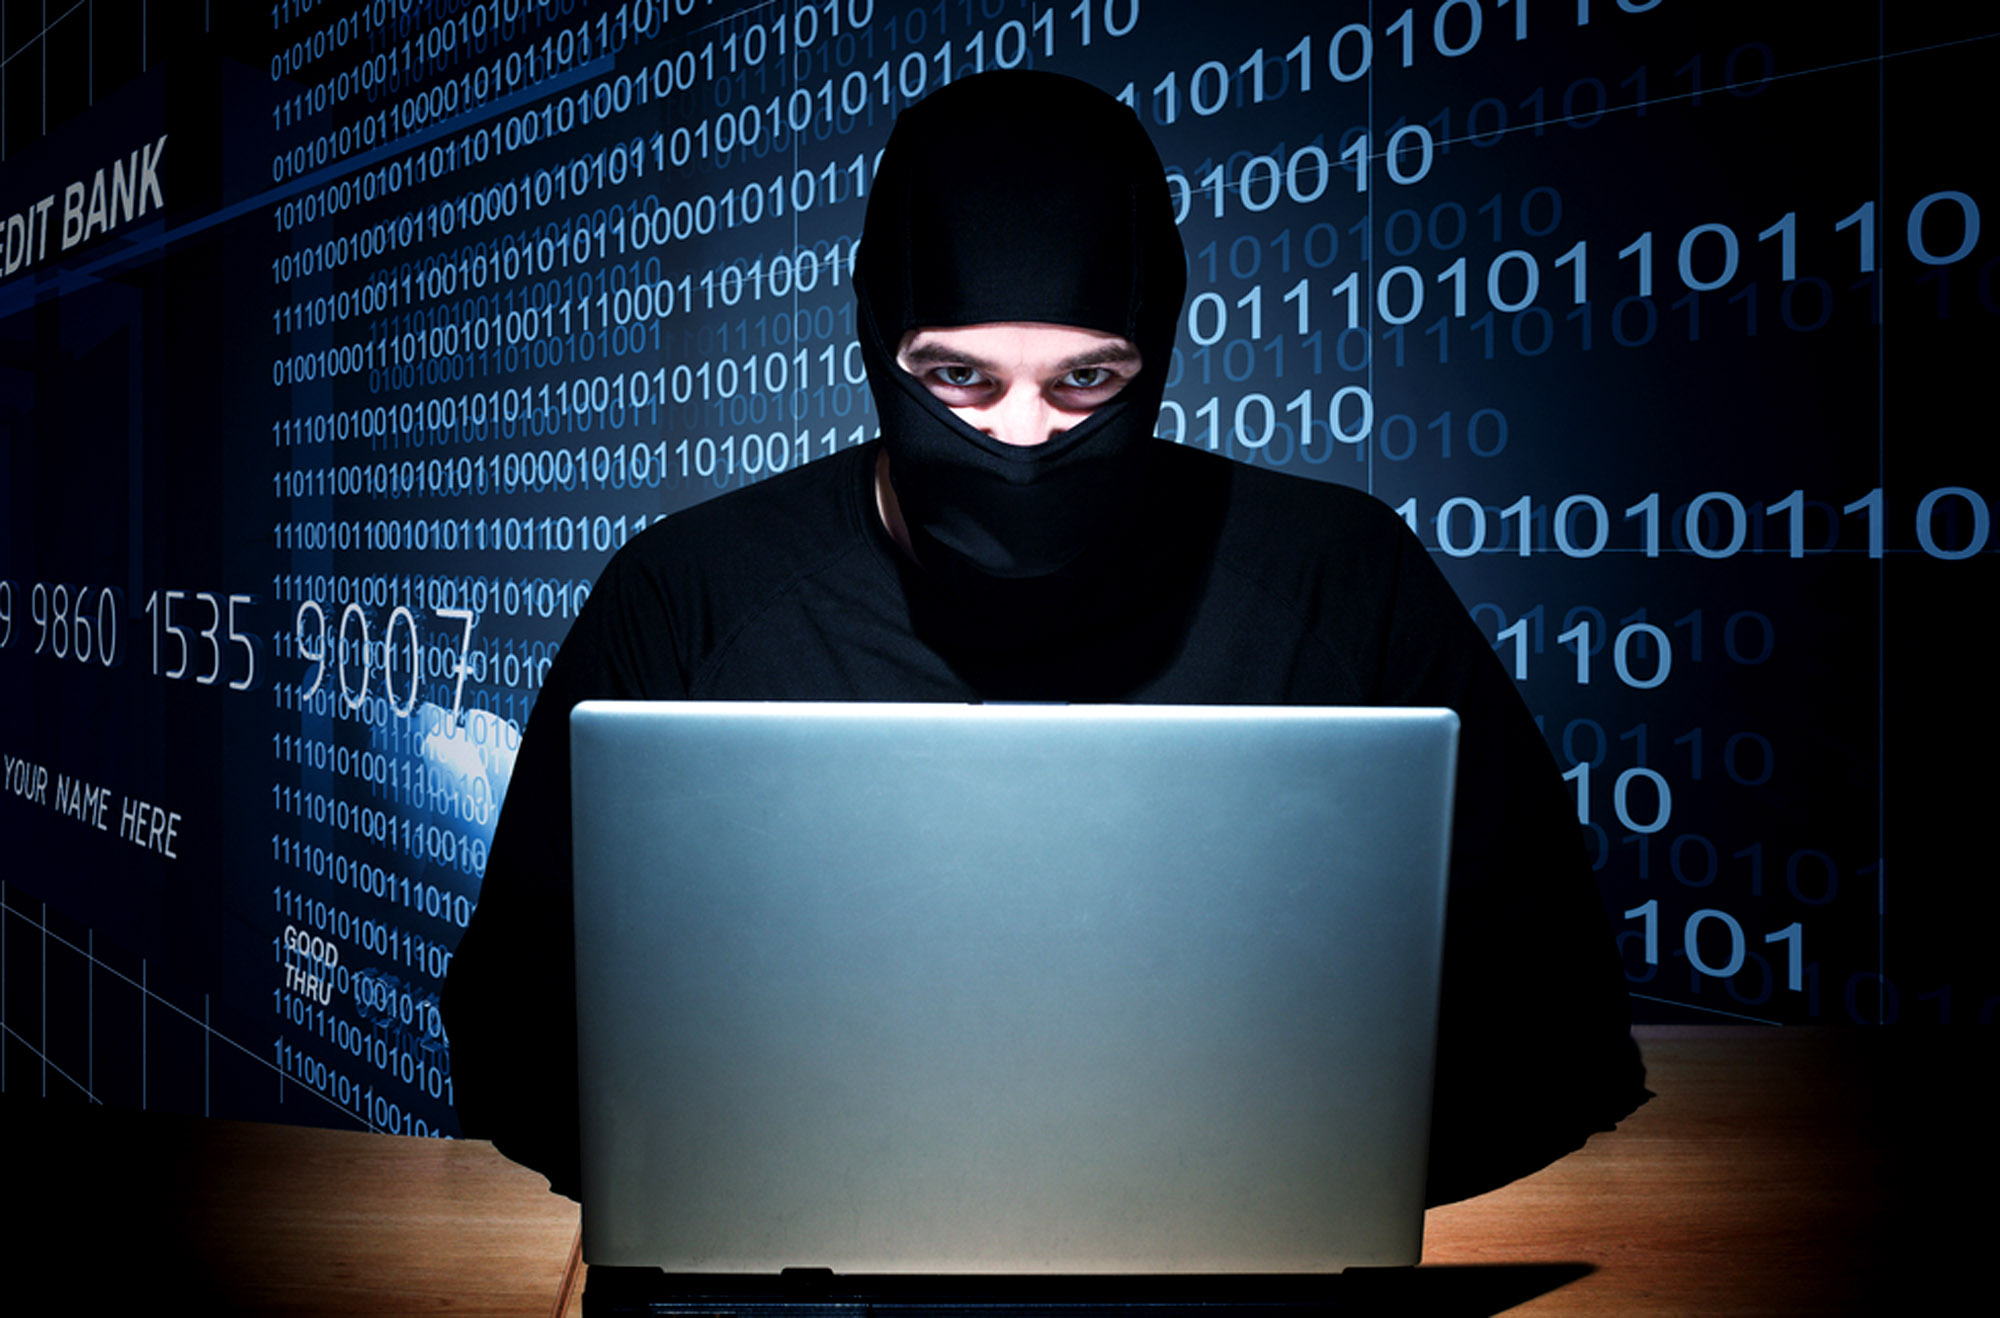 В СБУ заверили, что во время хакерских атак на правительственные сайты не произошло утечки персональных данных